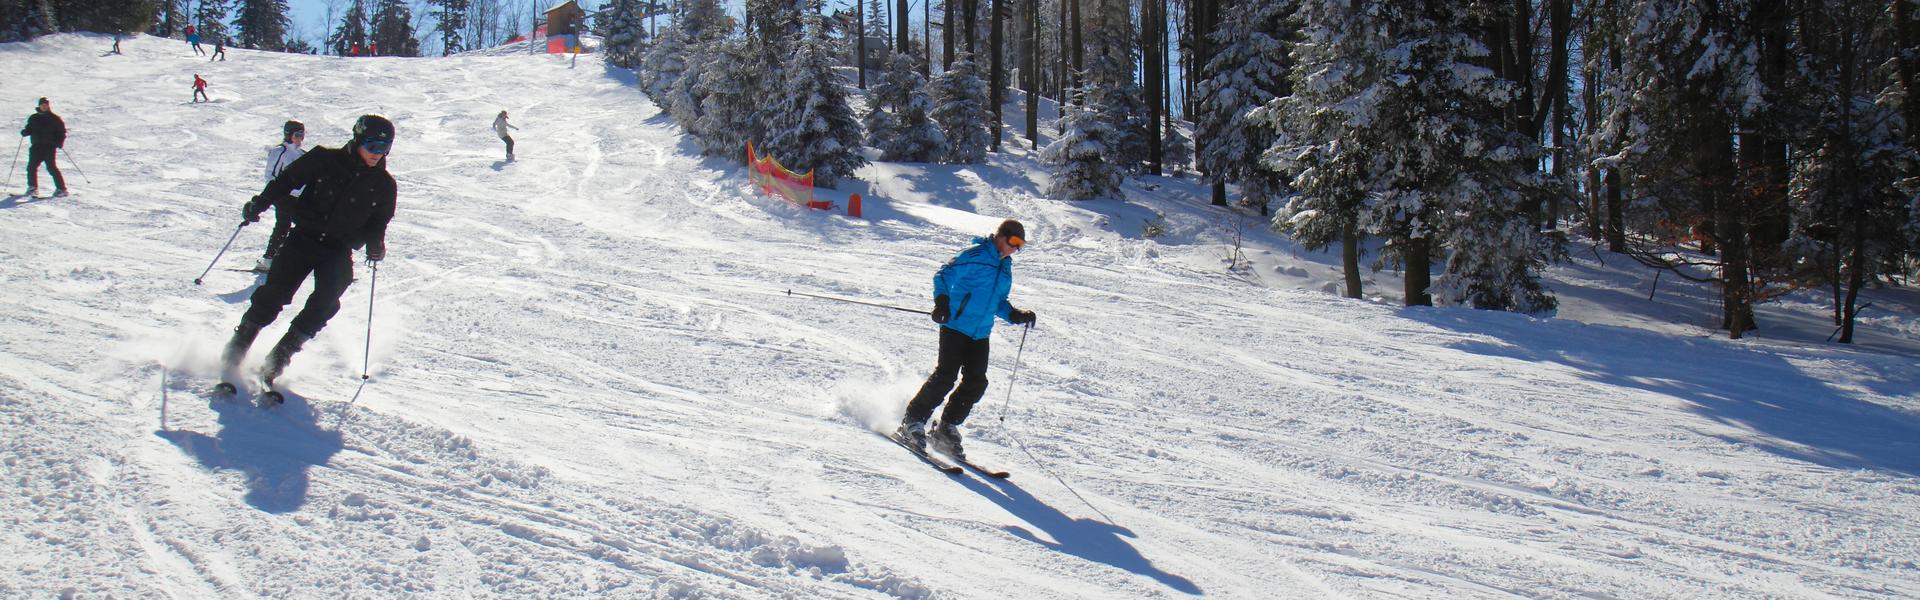 Widok na ośnieżony stok narciarski po ktorym jeżdza narciarze.